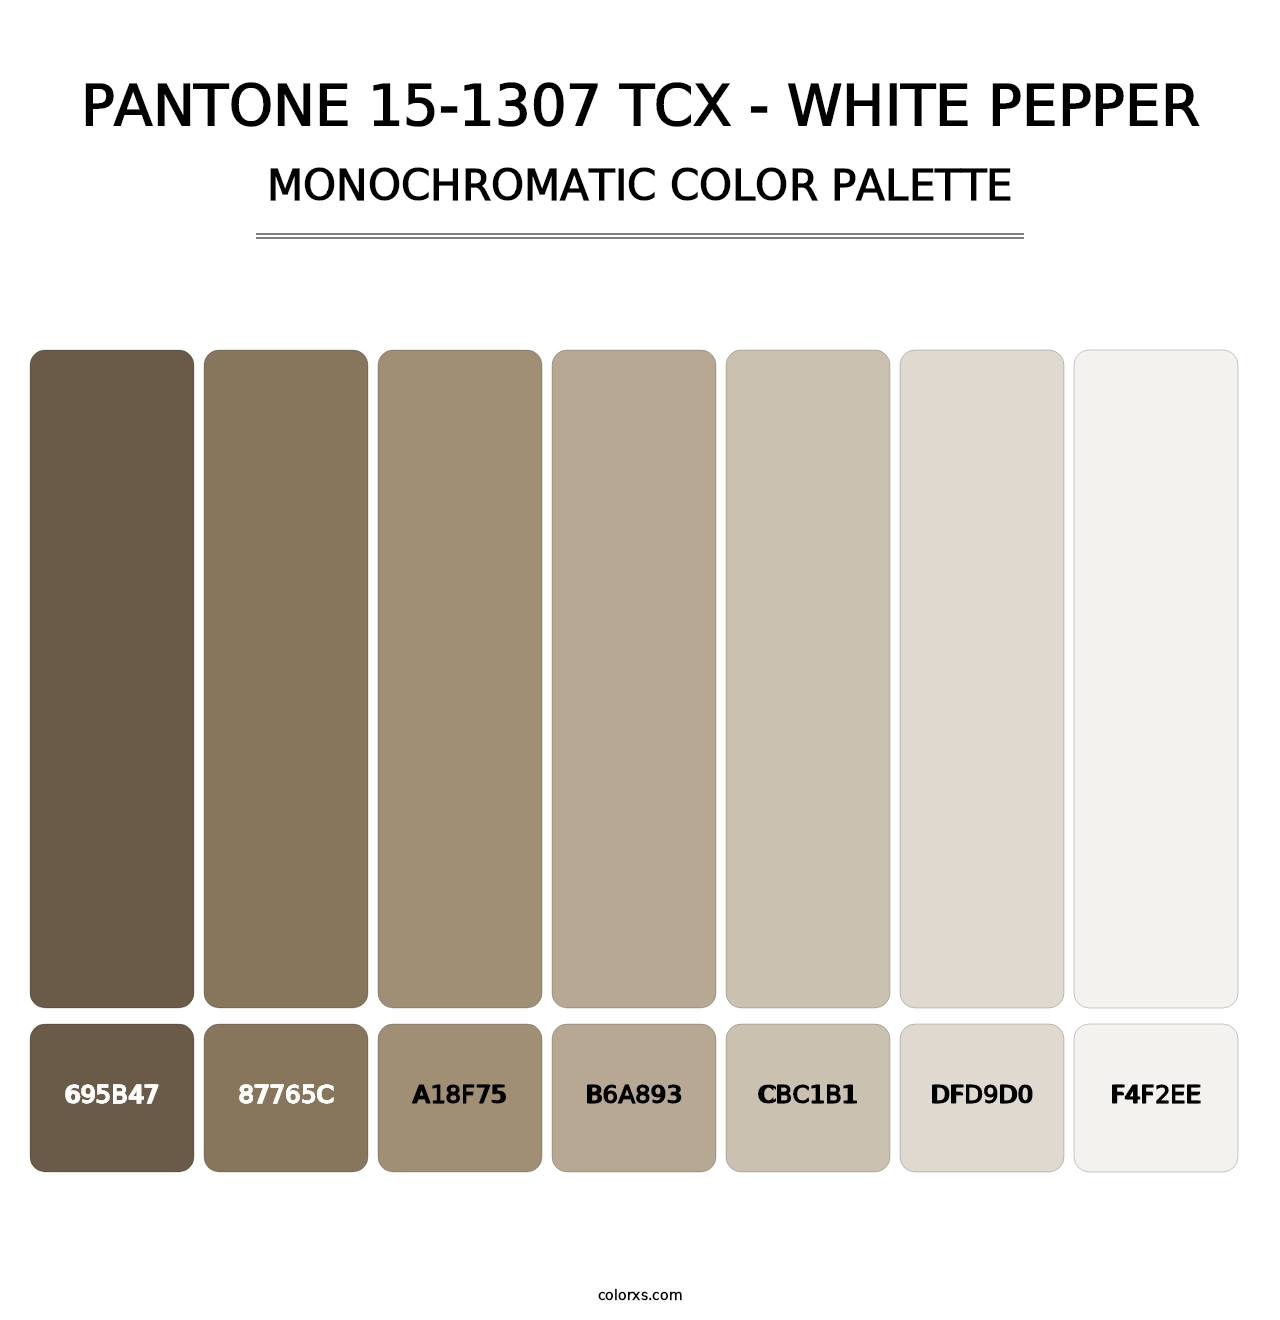 PANTONE 15-1307 TCX - White Pepper - Monochromatic Color Palette